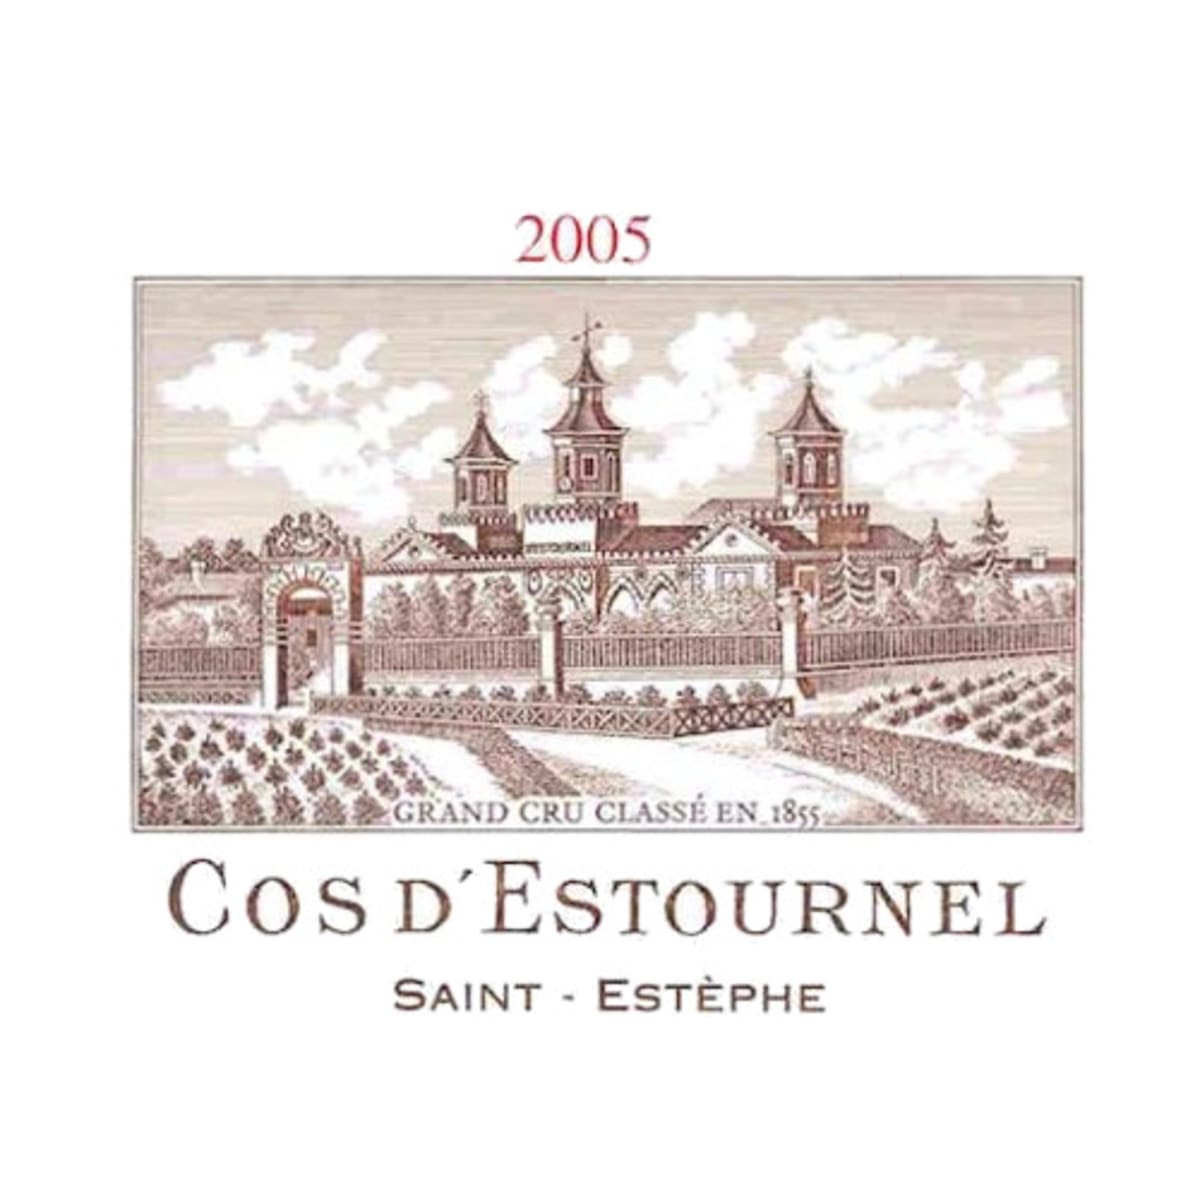 Chateau Cos d'Estournel (1.5 Liter Magnum) 2005 Front Label